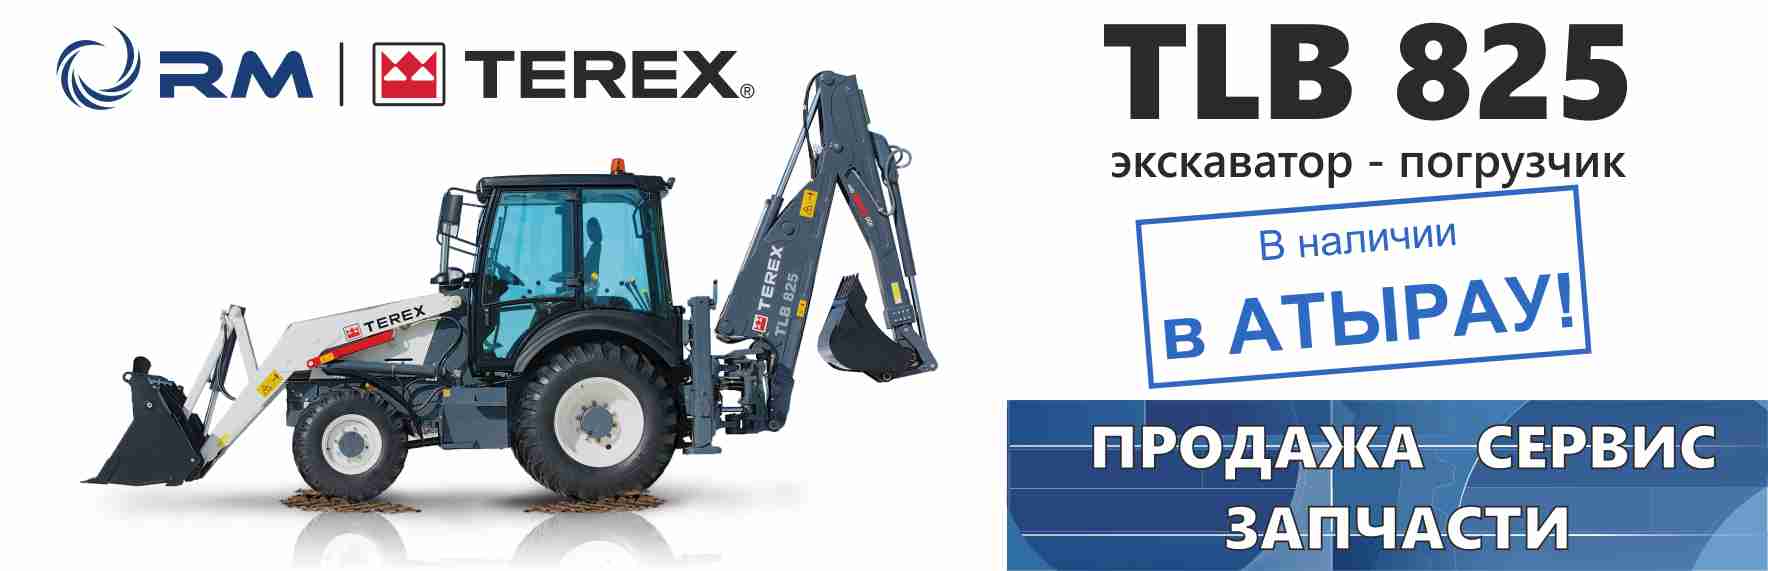 Terex tlb 825 rm: технические характеристики